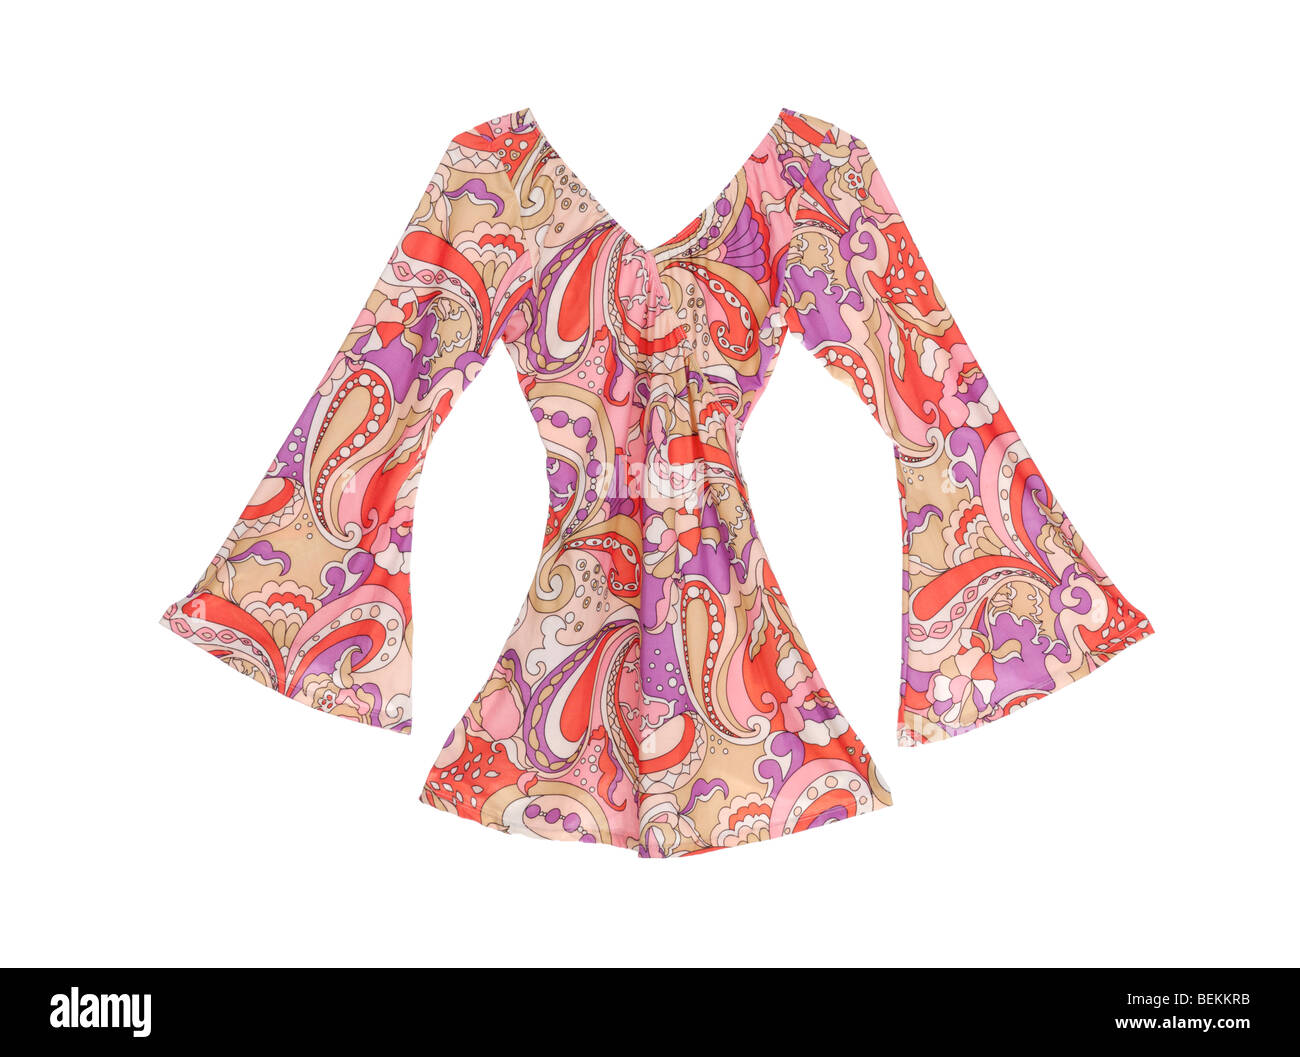 Fantaisie robe rétro style années 60 avec manches, bas Banque D'Images